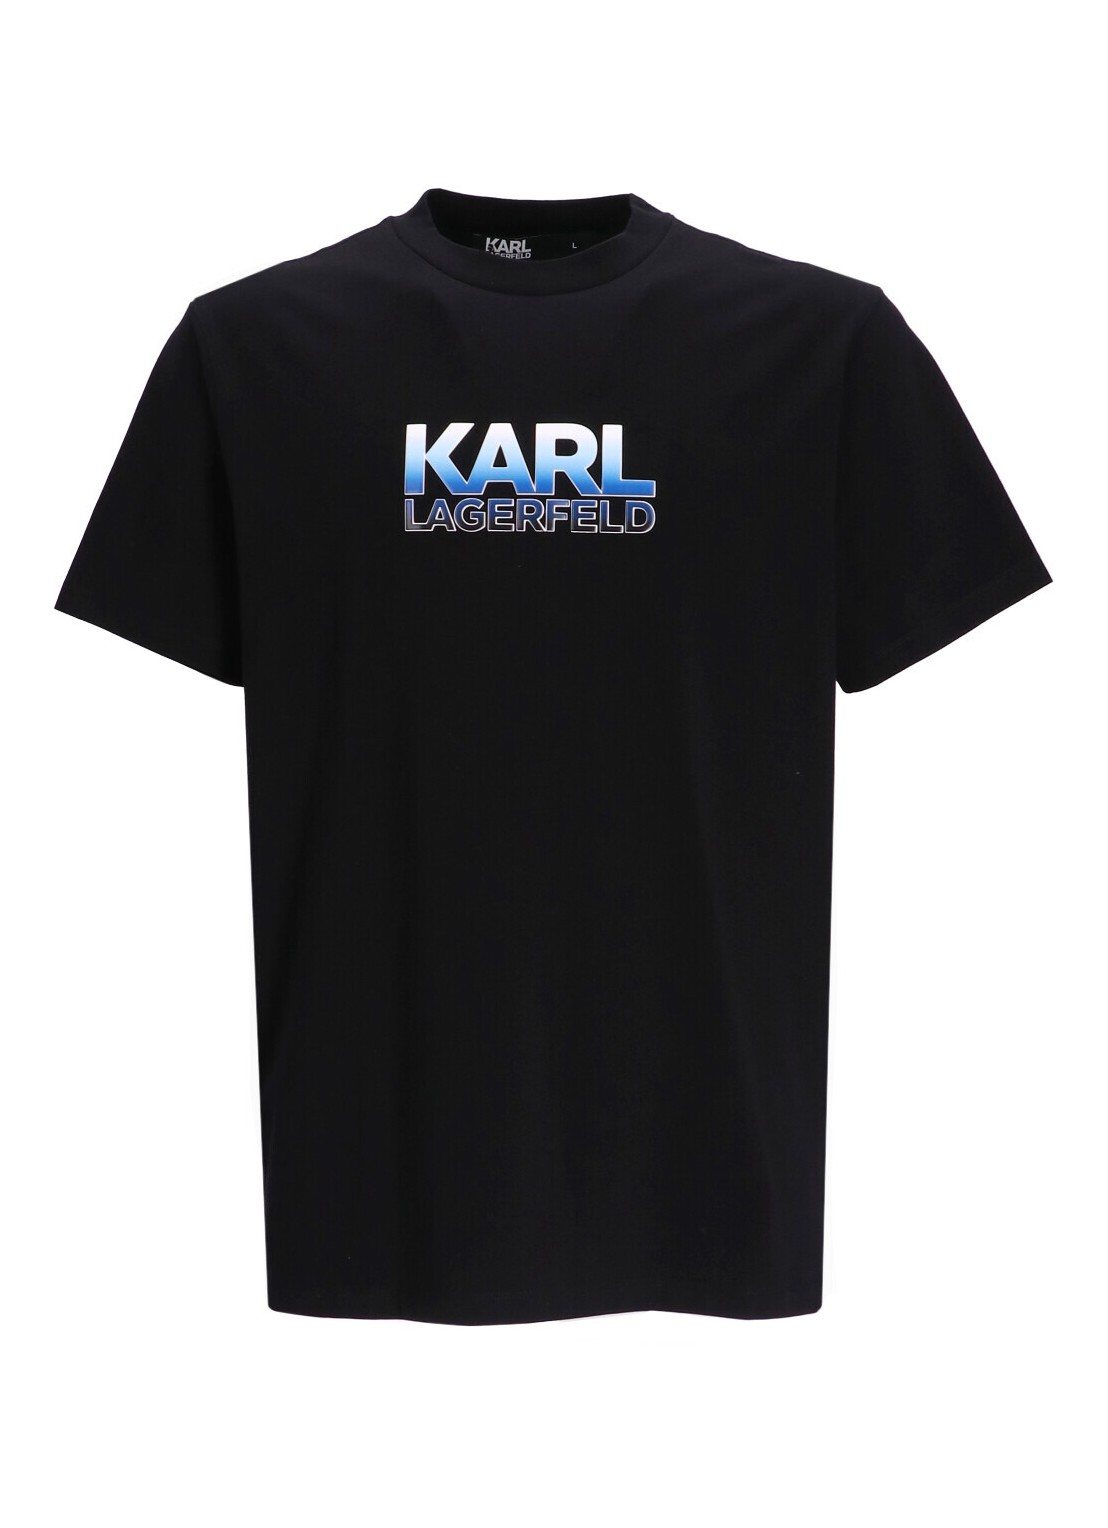 Camiseta karl lagerfeld t-shirt man t-shirt crewneck 755402541221 990 talla L
 